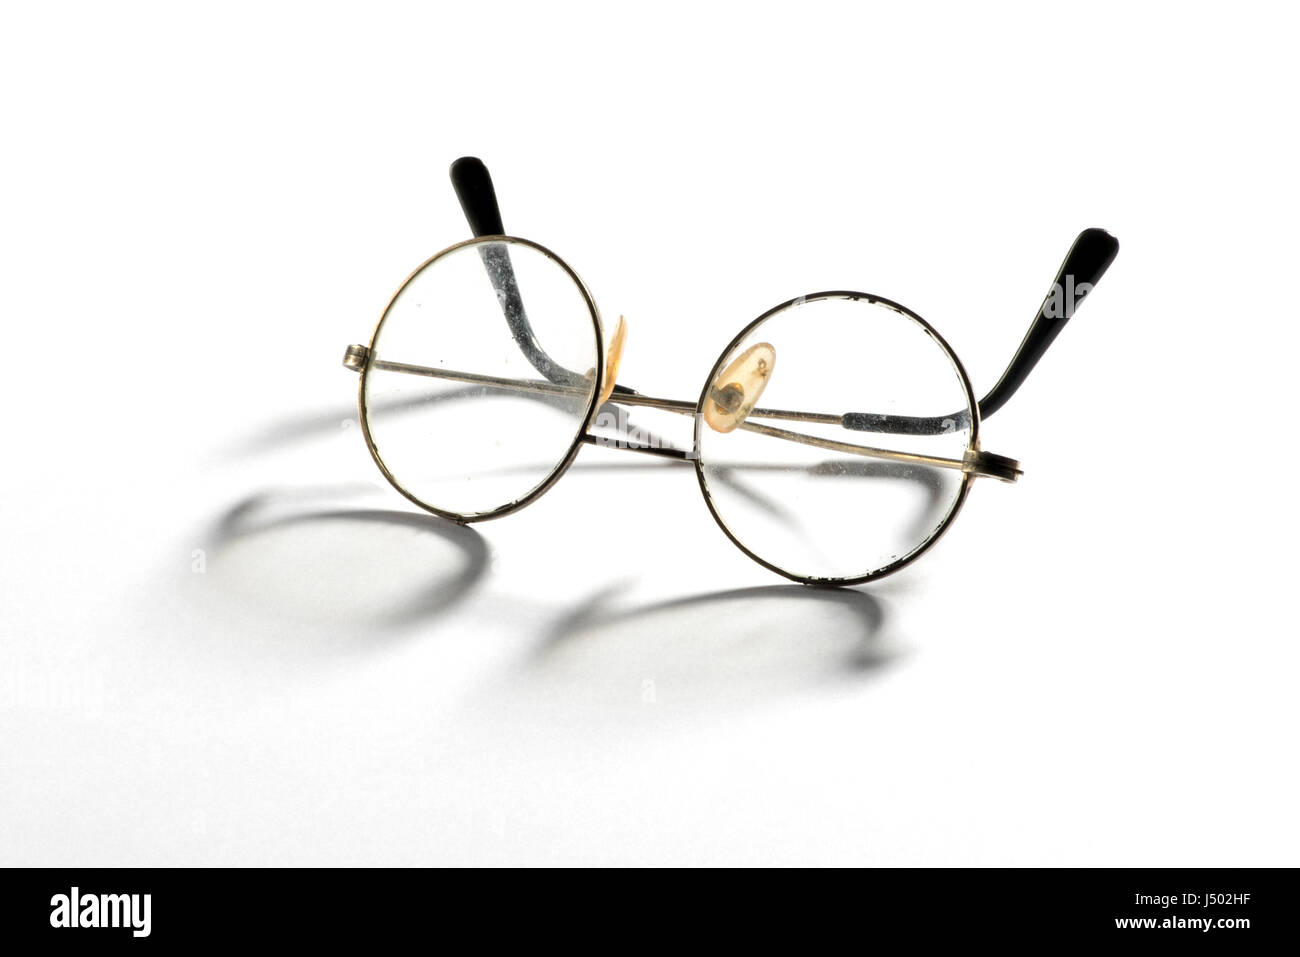 Paar alte Vintage Draht Brillen oder Brillen mit runden Gläsern angezeigt  gerahmt geschlossen auf weiß mit Schatten Stockfotografie - Alamy